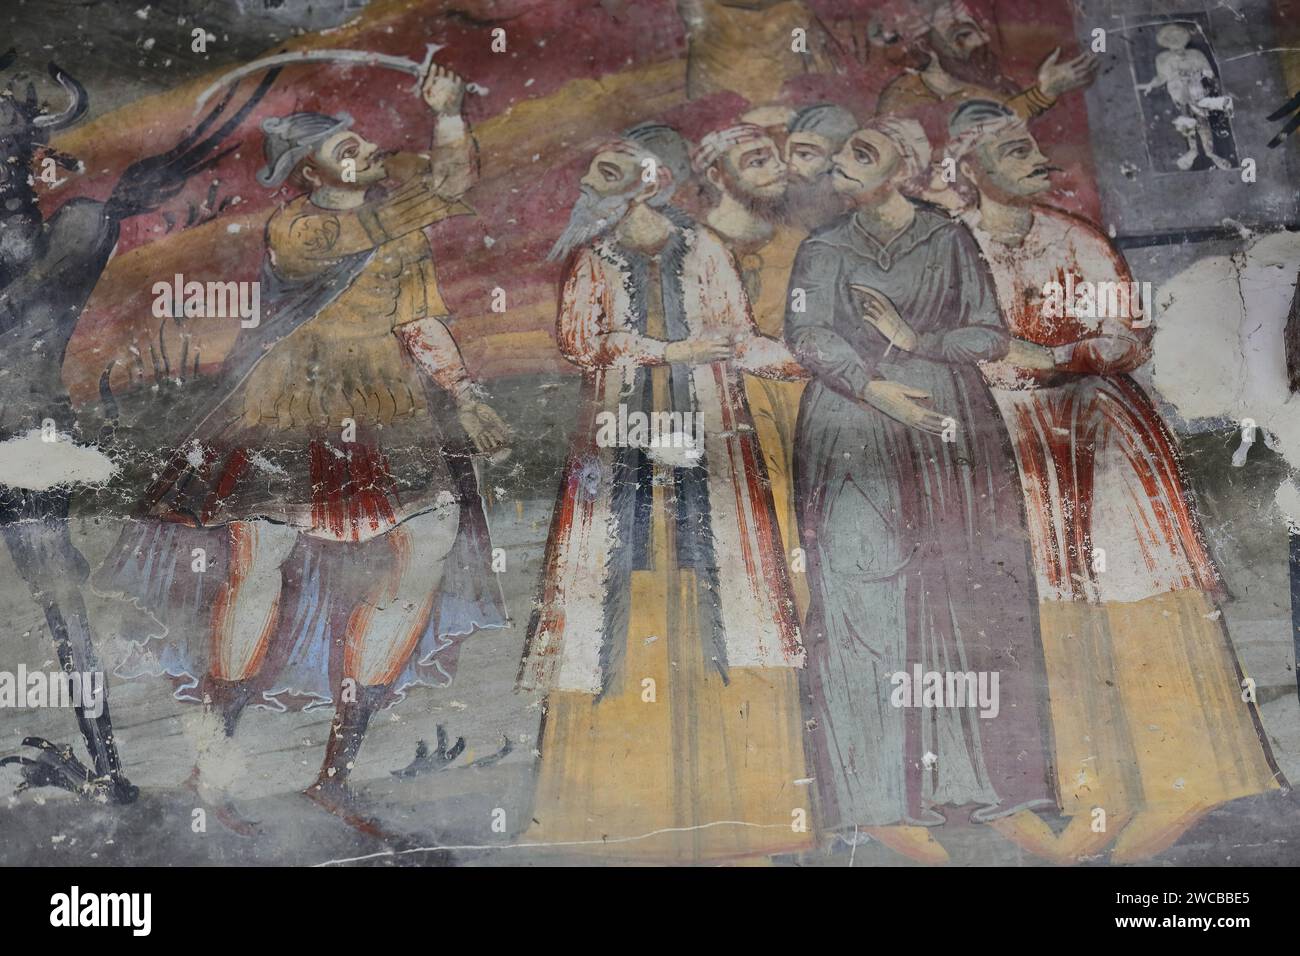 230 affreschi murali nella chiesa di Santa Maria di Leusa con i suoi murales vandalizzati del 1812 d.C. raffiguranti scene bibliche. Permet-Albania. Foto Stock